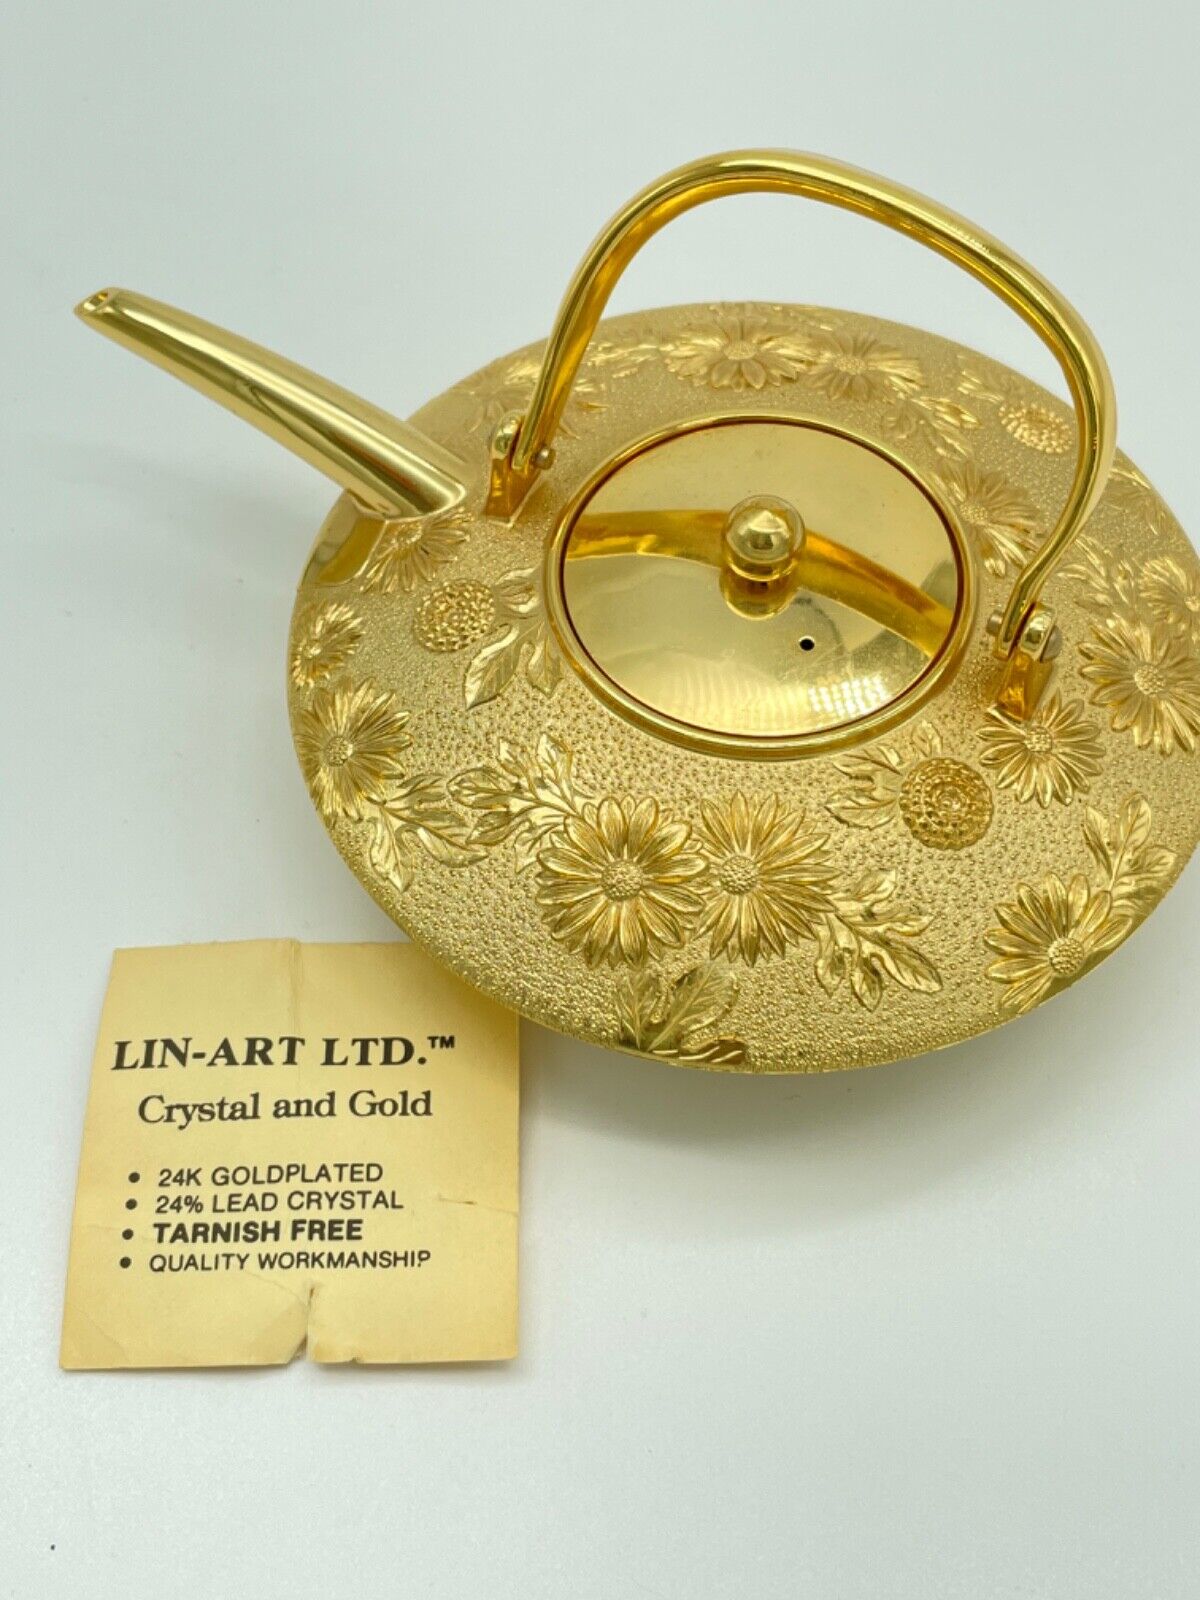 Vtg Lin-Art Ltd 24KGP 24% Lead Crystal Gold Plated Japanese Teapot Floral 6”